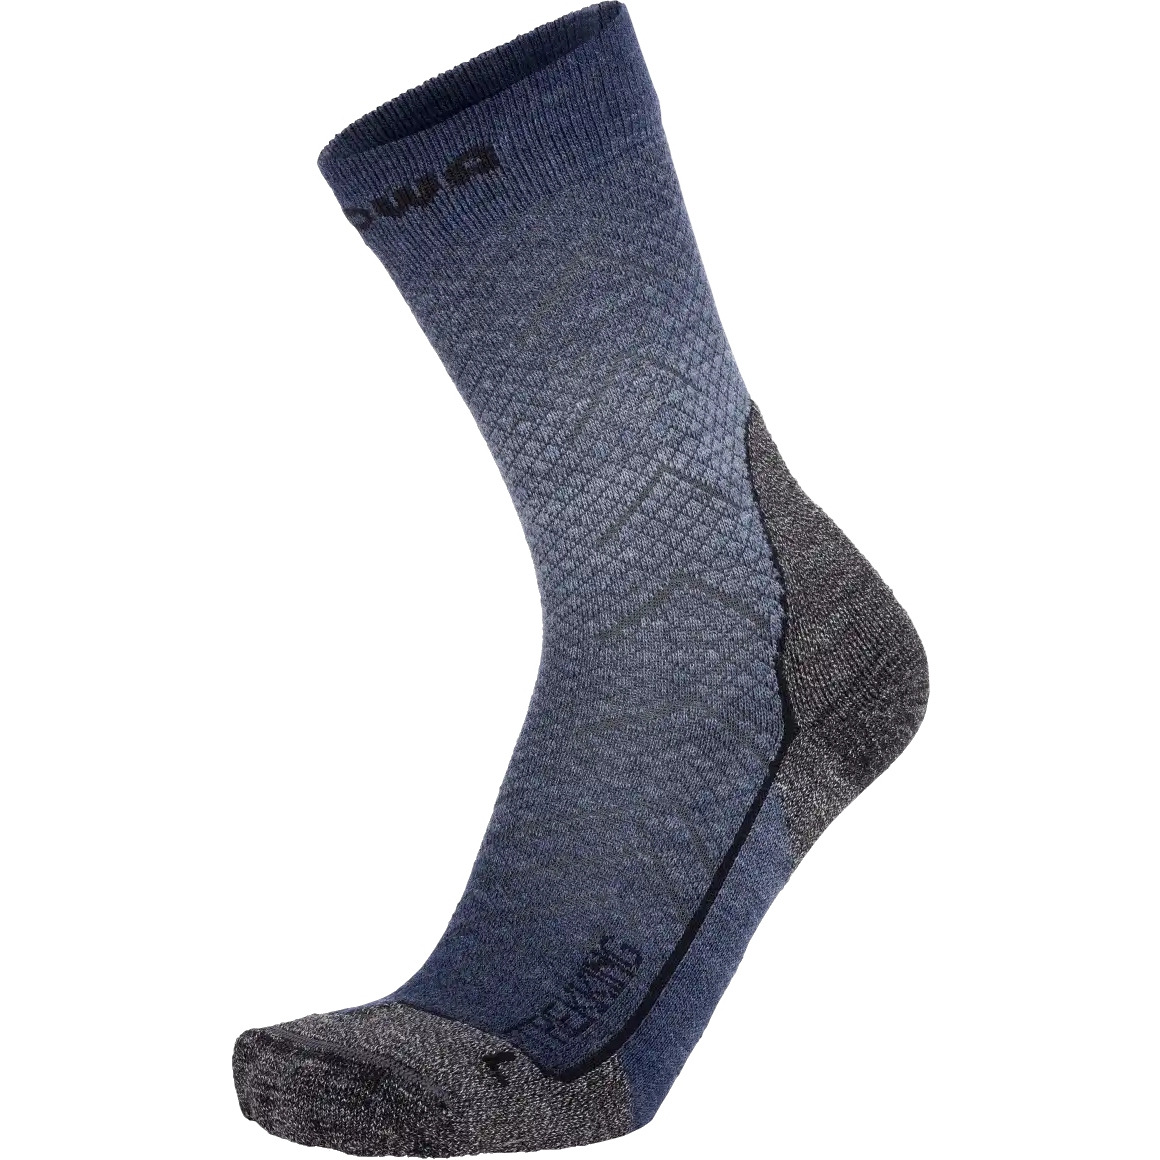 Produktbild von LOWA Trekking Outdoor Socken - blau